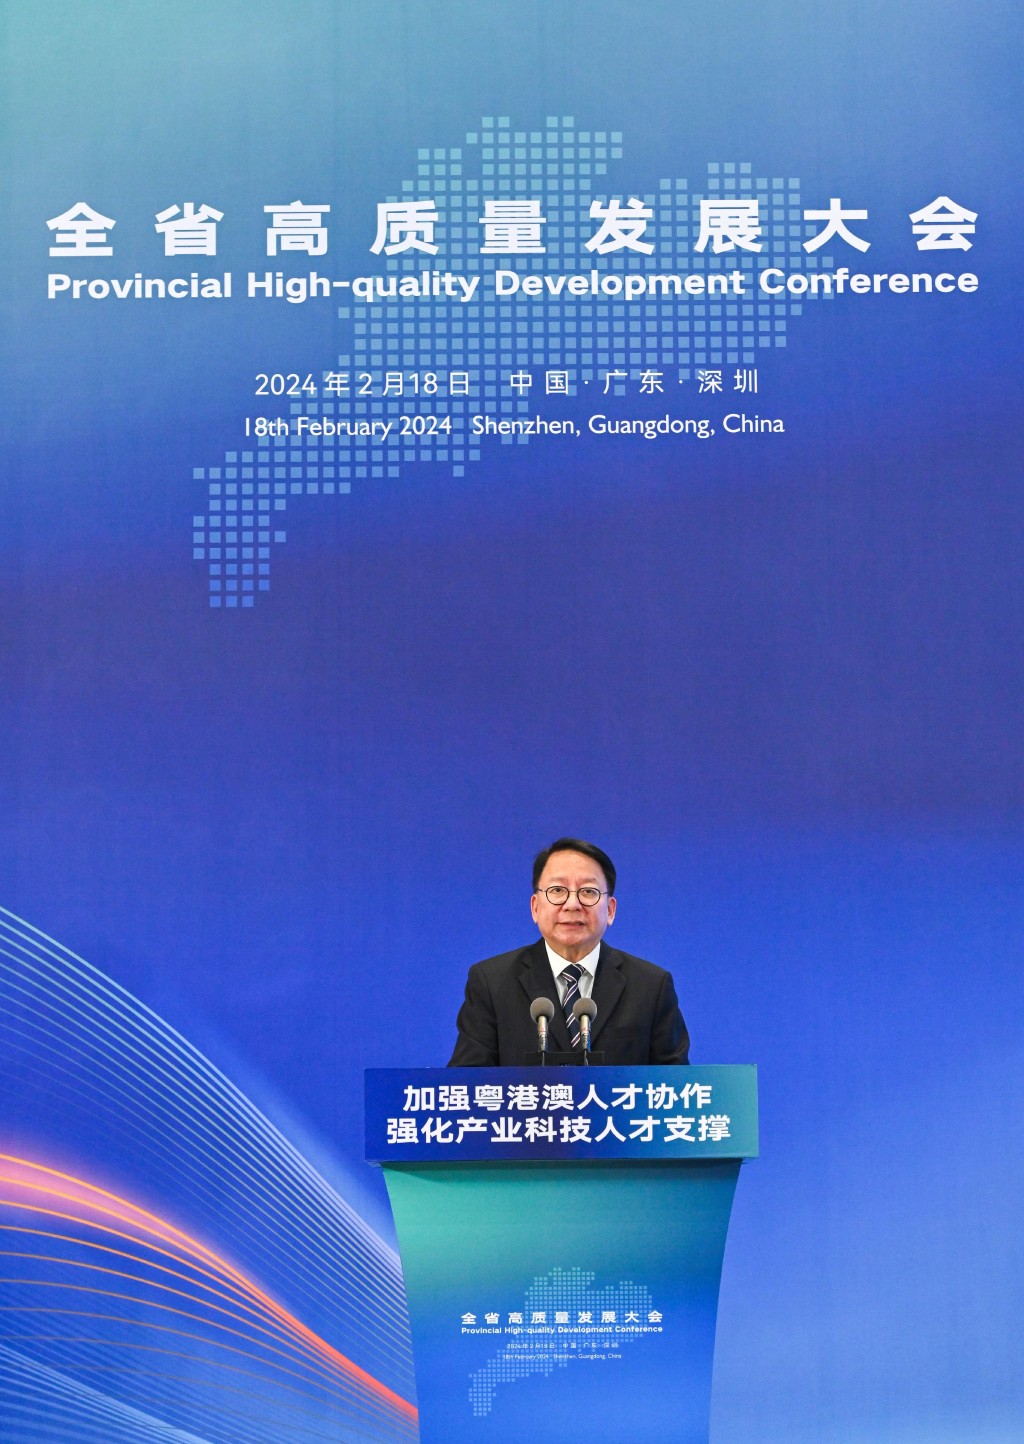 陳國基在廣東省高質量發展大會人才專題分論壇致辭。政府新聞處